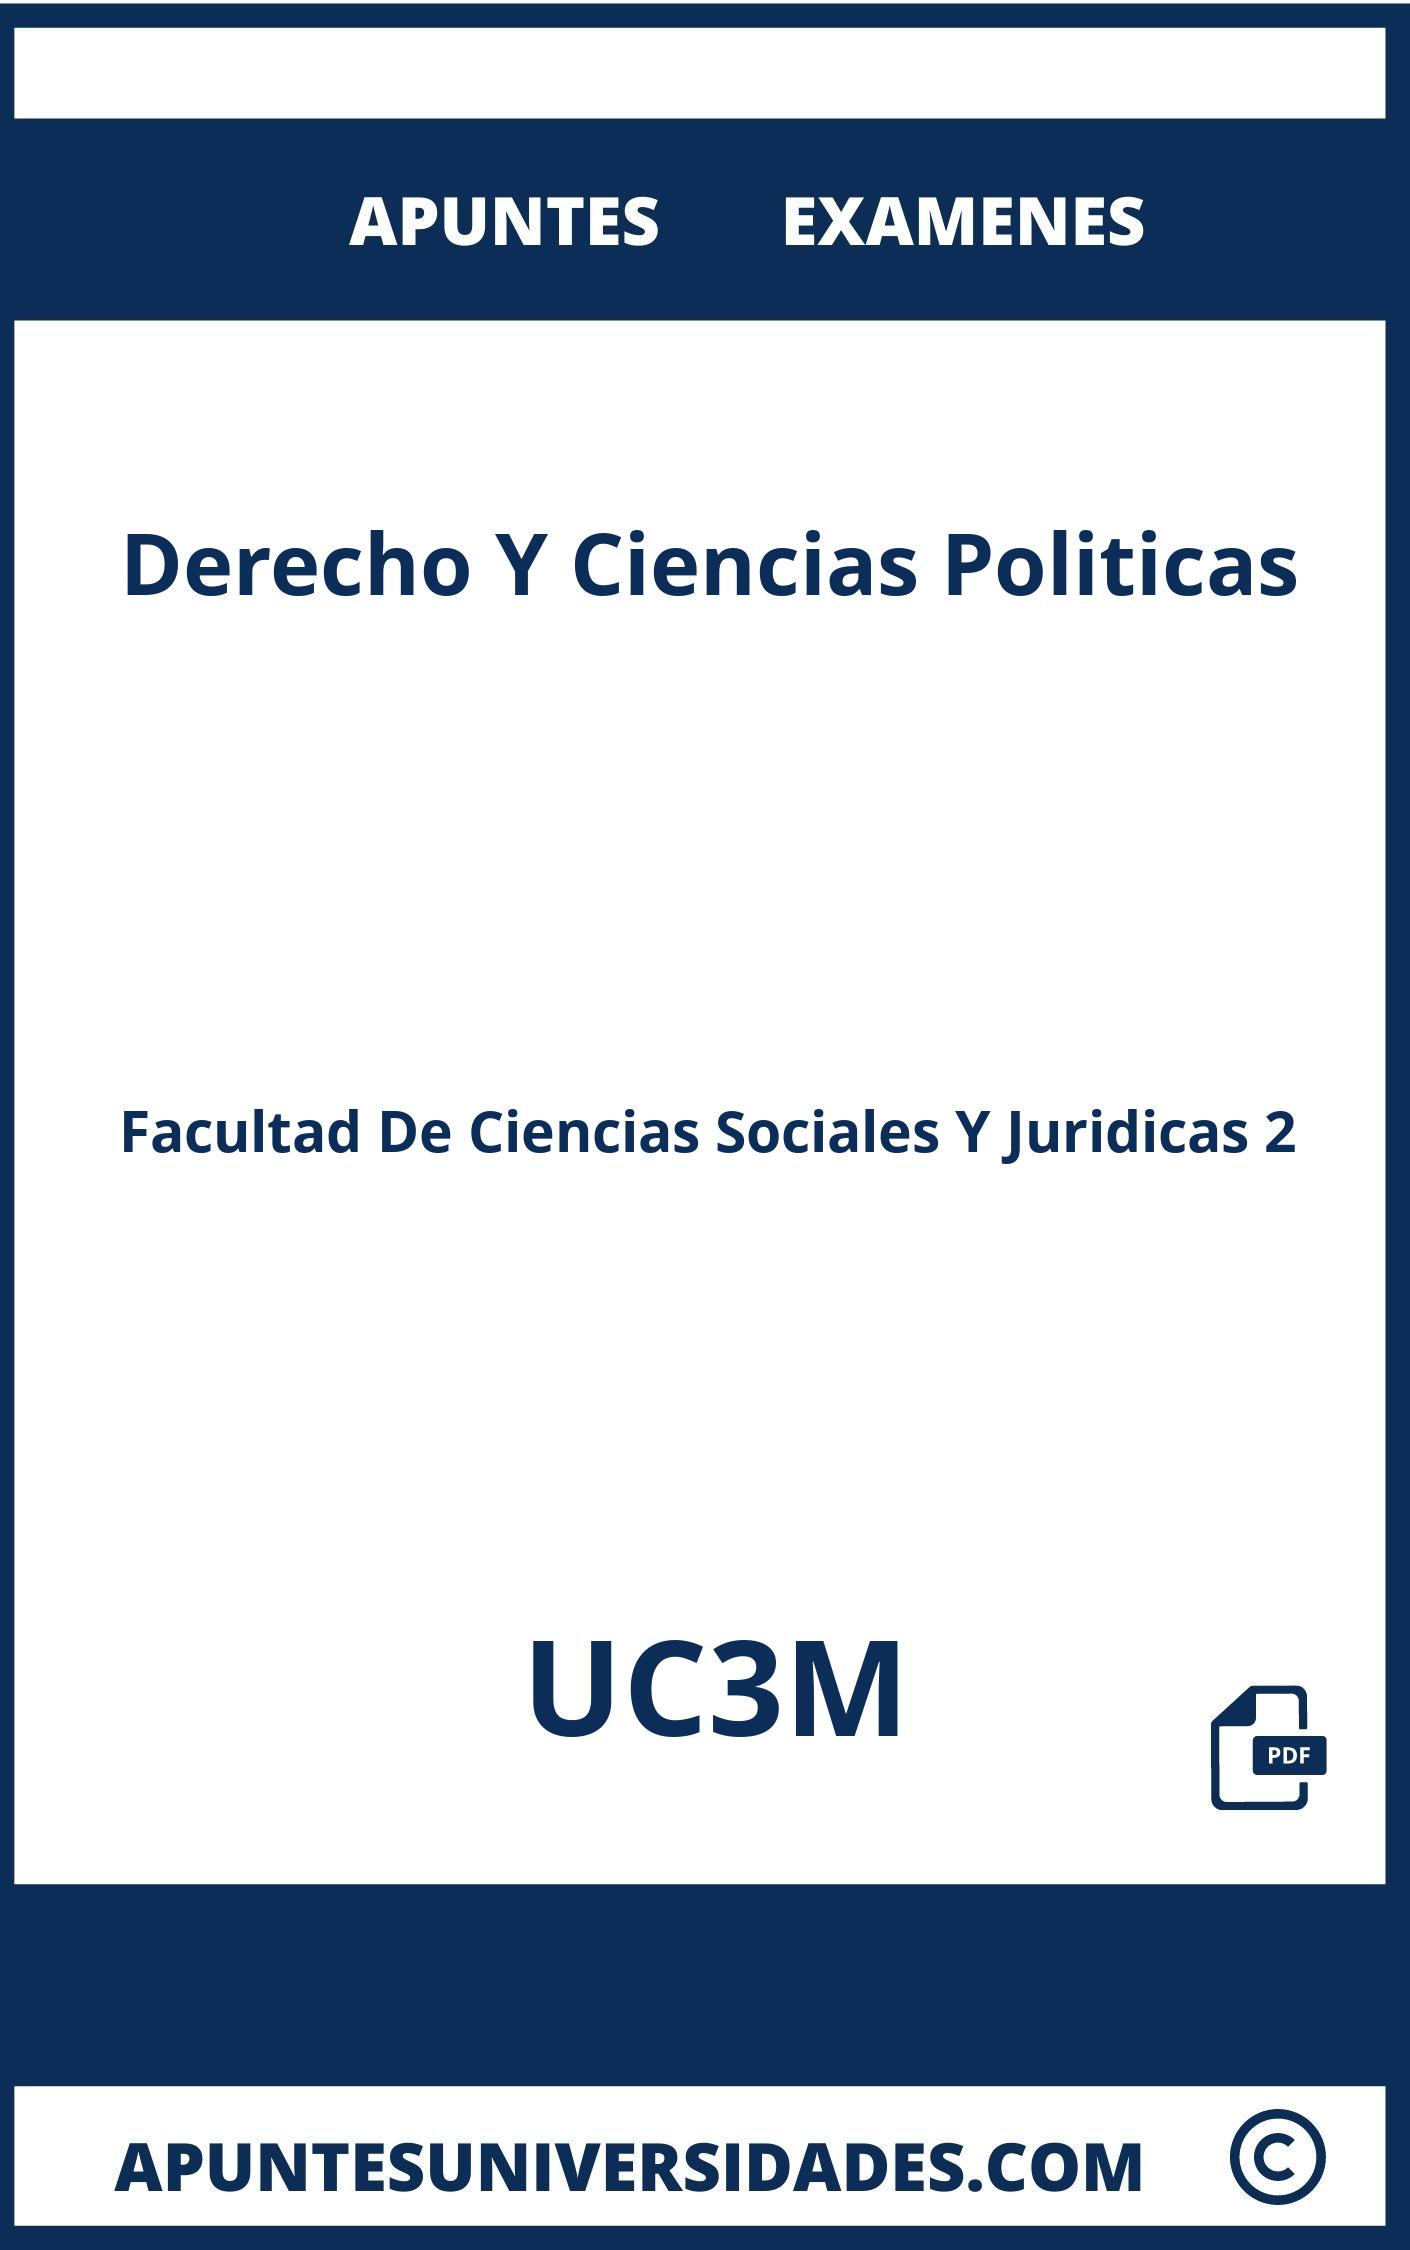 Apuntes y Examenes de Derecho Y Ciencias Politicas UC3M